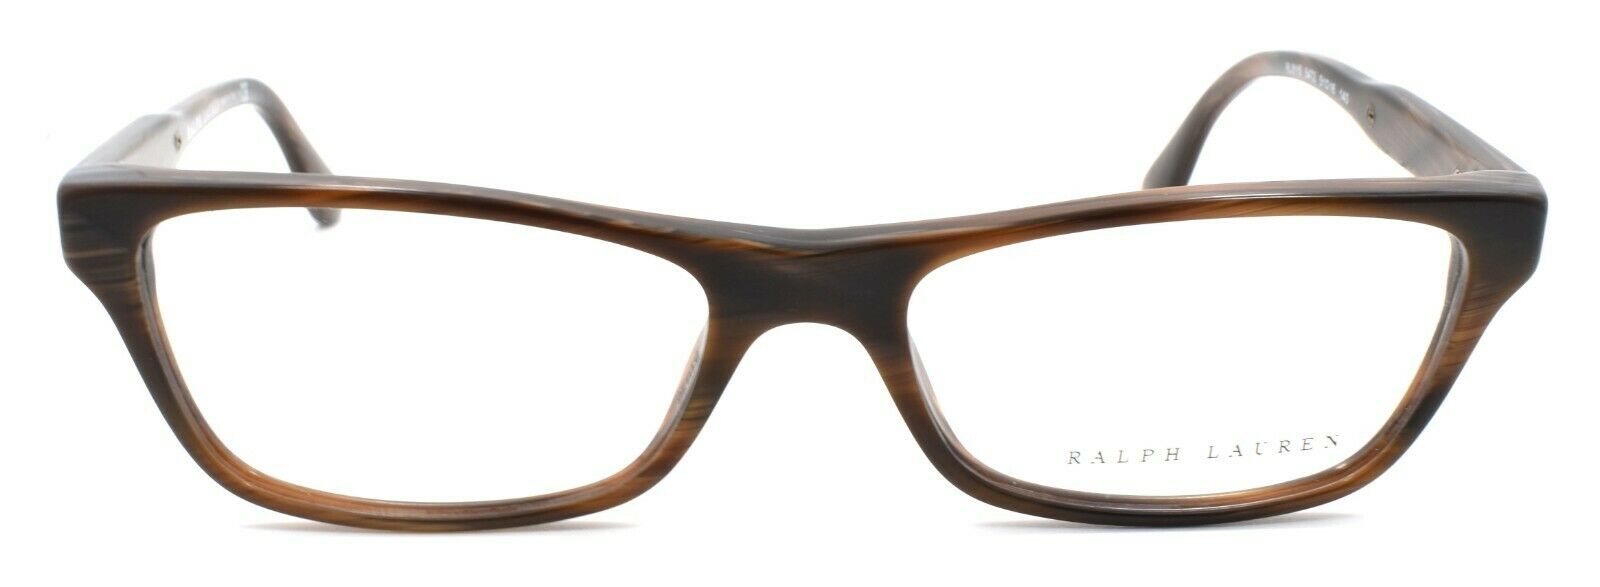 2-Ralph Lauren RL6115 5472 Women's Eyeglasses Frames 51-16-140 Brown Horn-8053672232615-IKSpecs